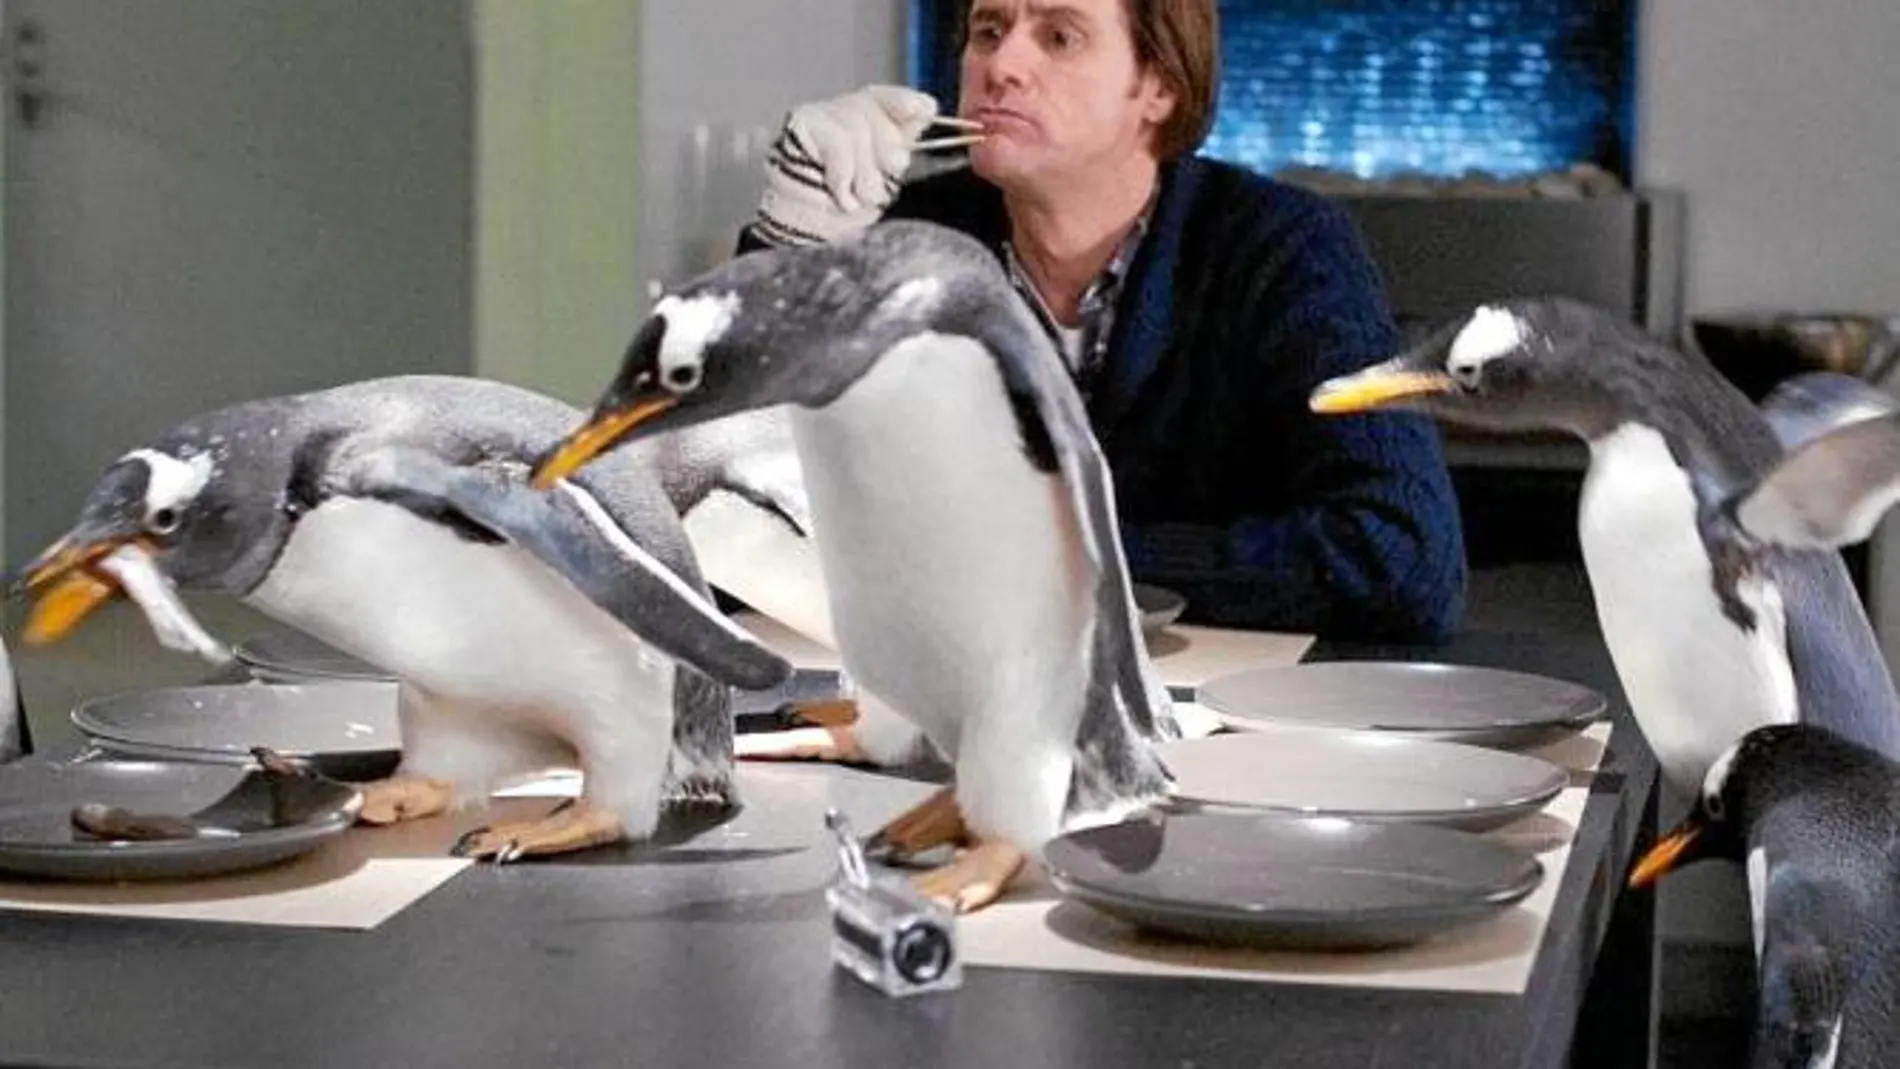 HERENCIA. El actor, uno de los cómicos más taquilleros, recibe a unos pingüinos como legado